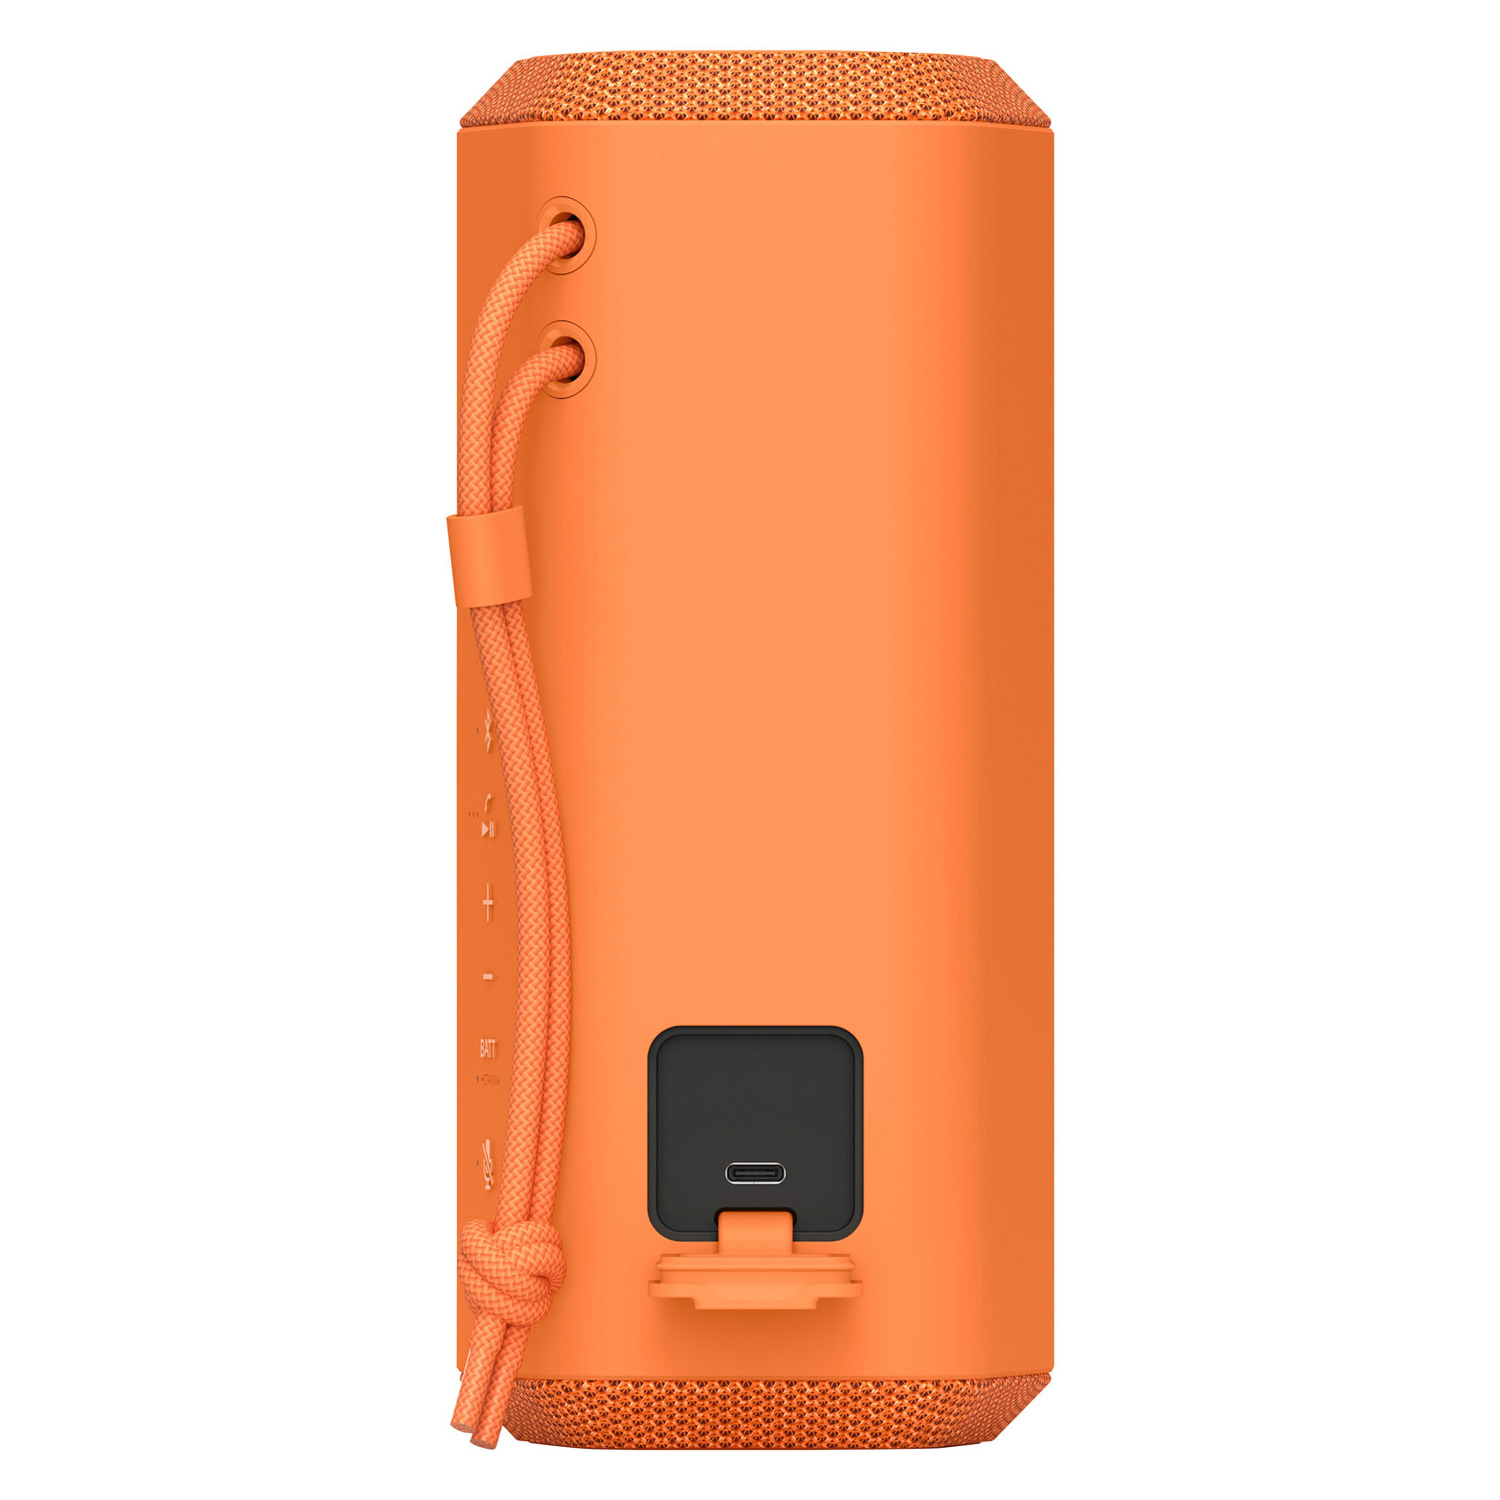 Caixa de Som Sony Portátil SRS-XE200 / Bluetooth - Orange